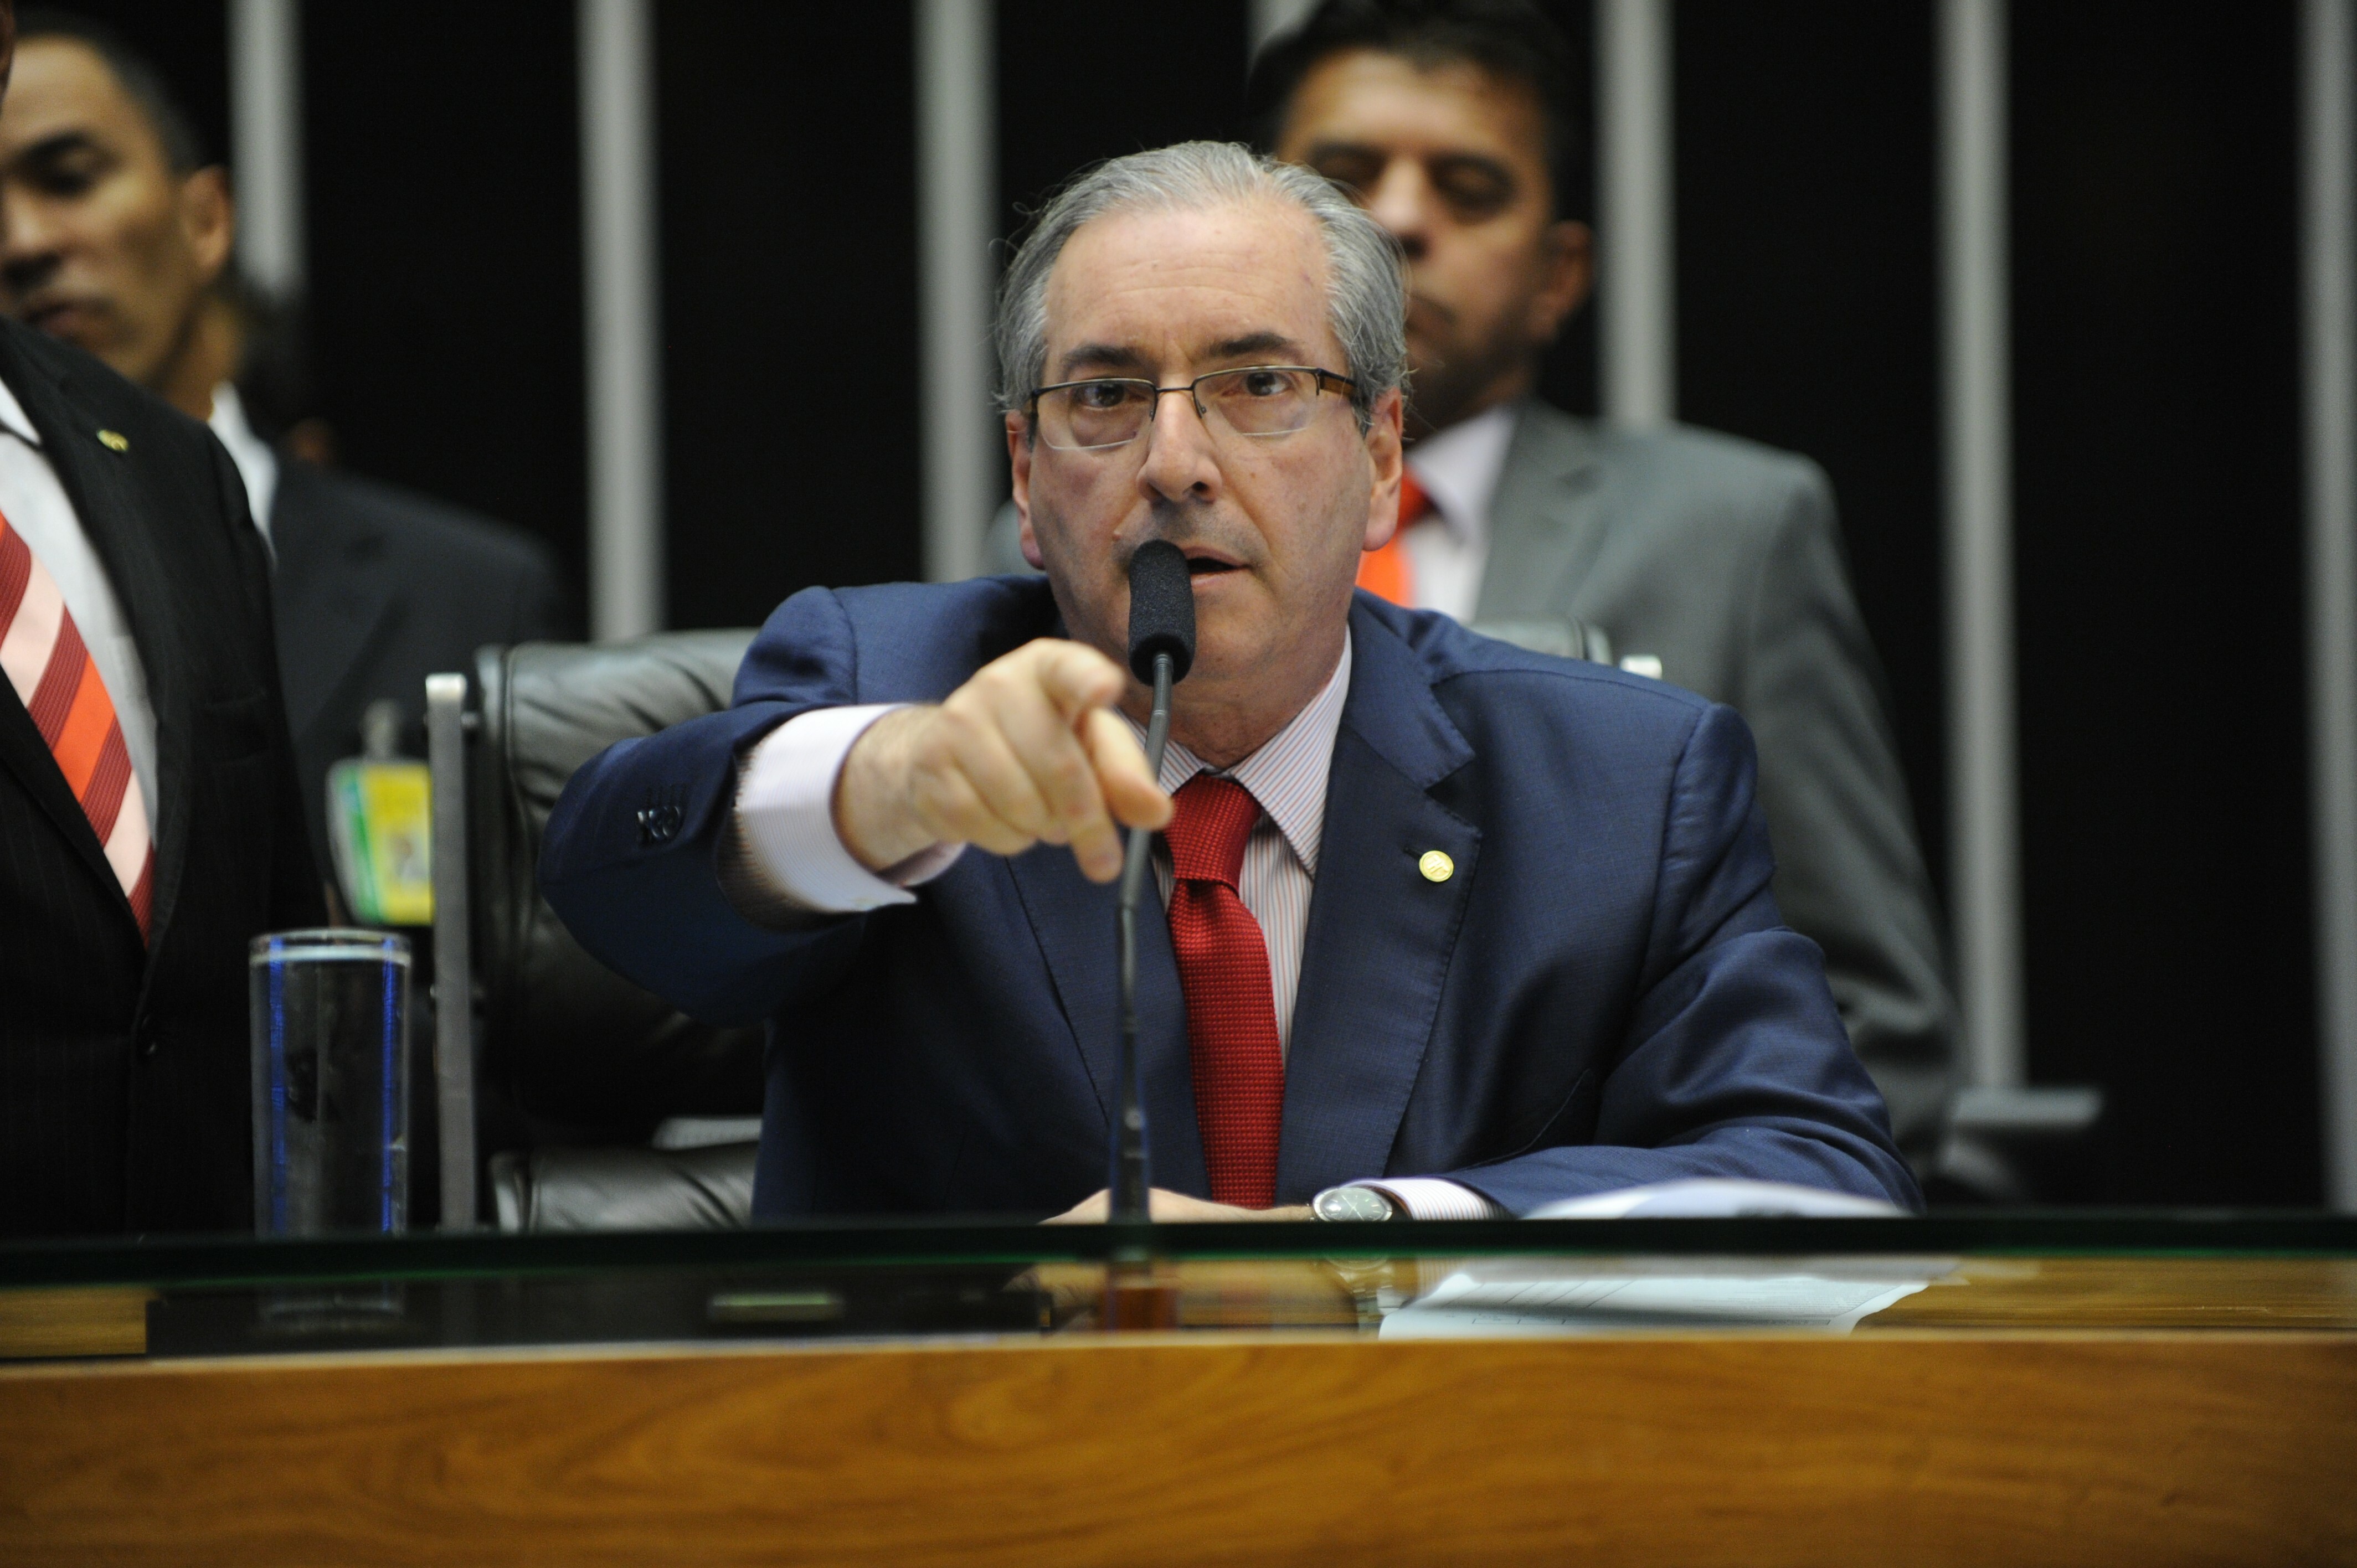 O presidente da Câmara, Eduardo Cunha (PMDB-RJ), denunciado pela Procuradoria-Geral da República.